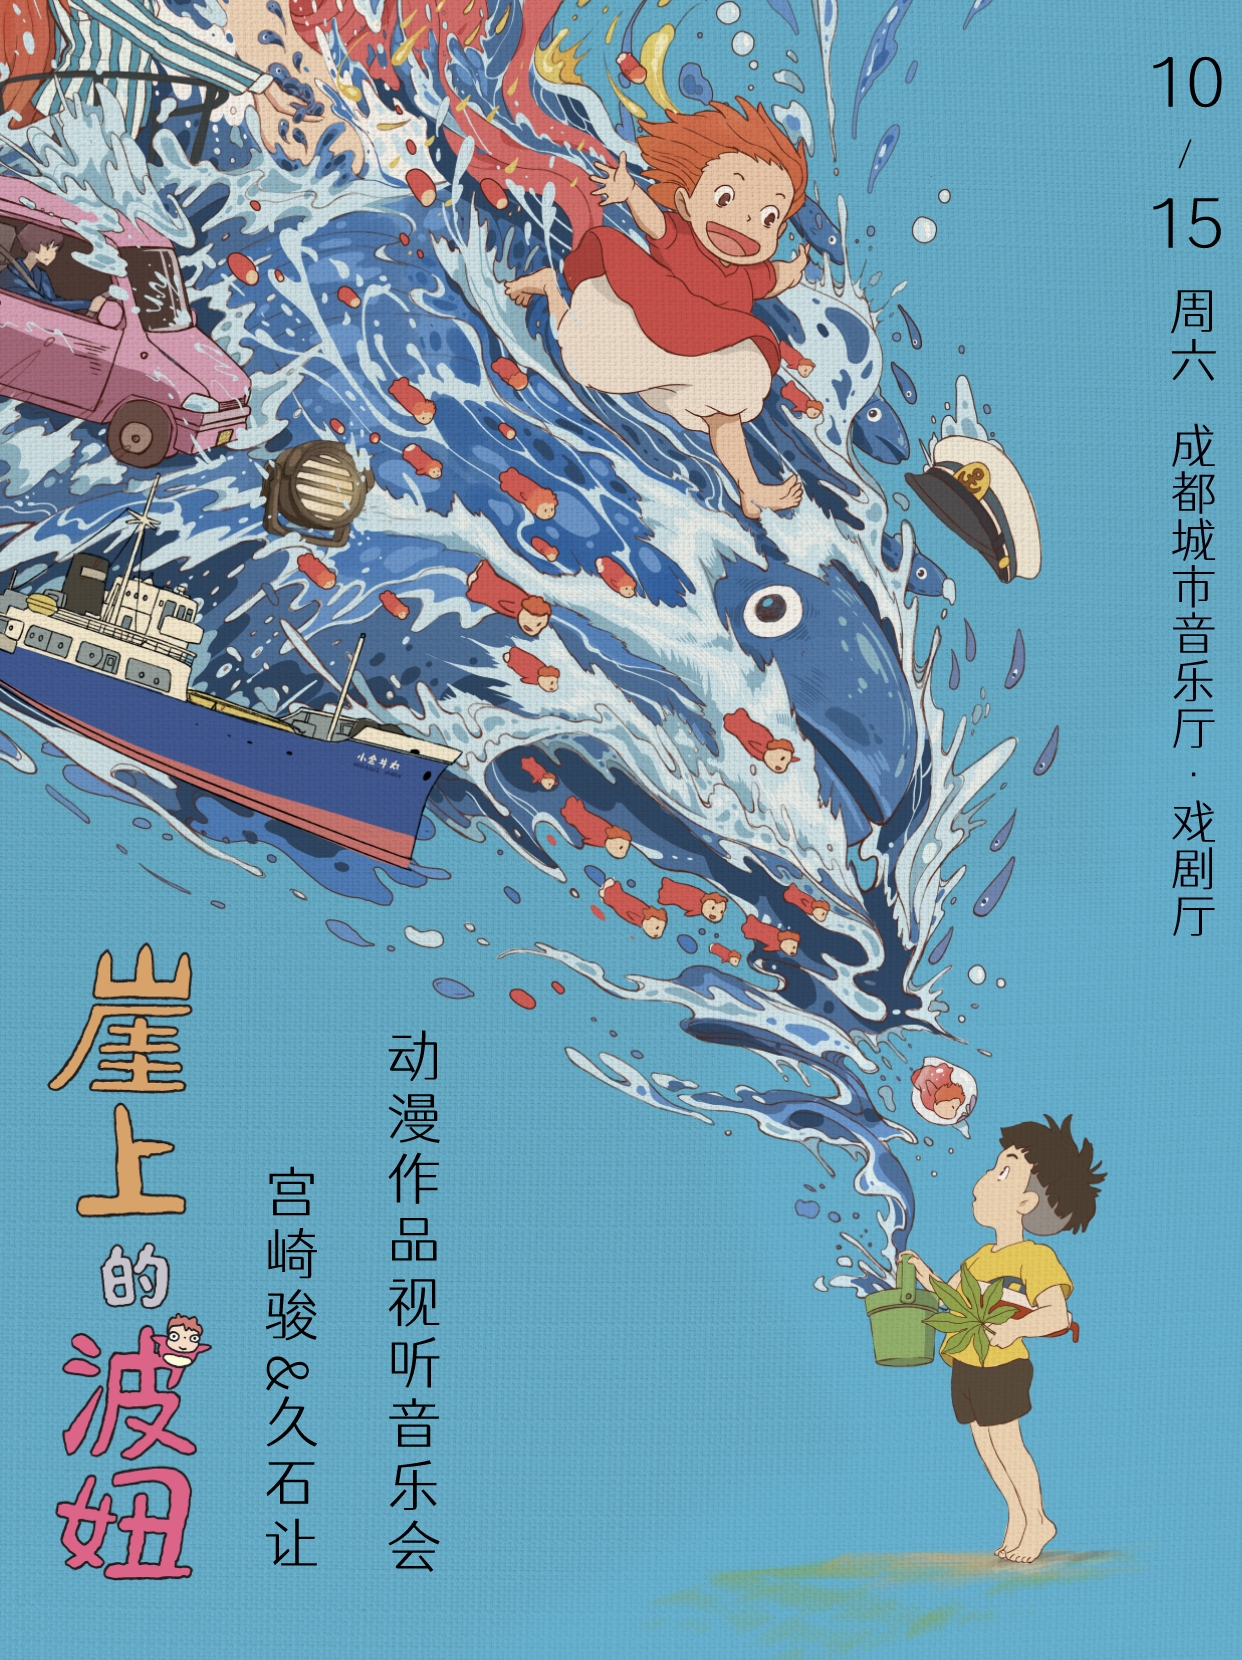 【成都】《崖上的波妞》宫崎骏&久石让动漫作品视听音乐会